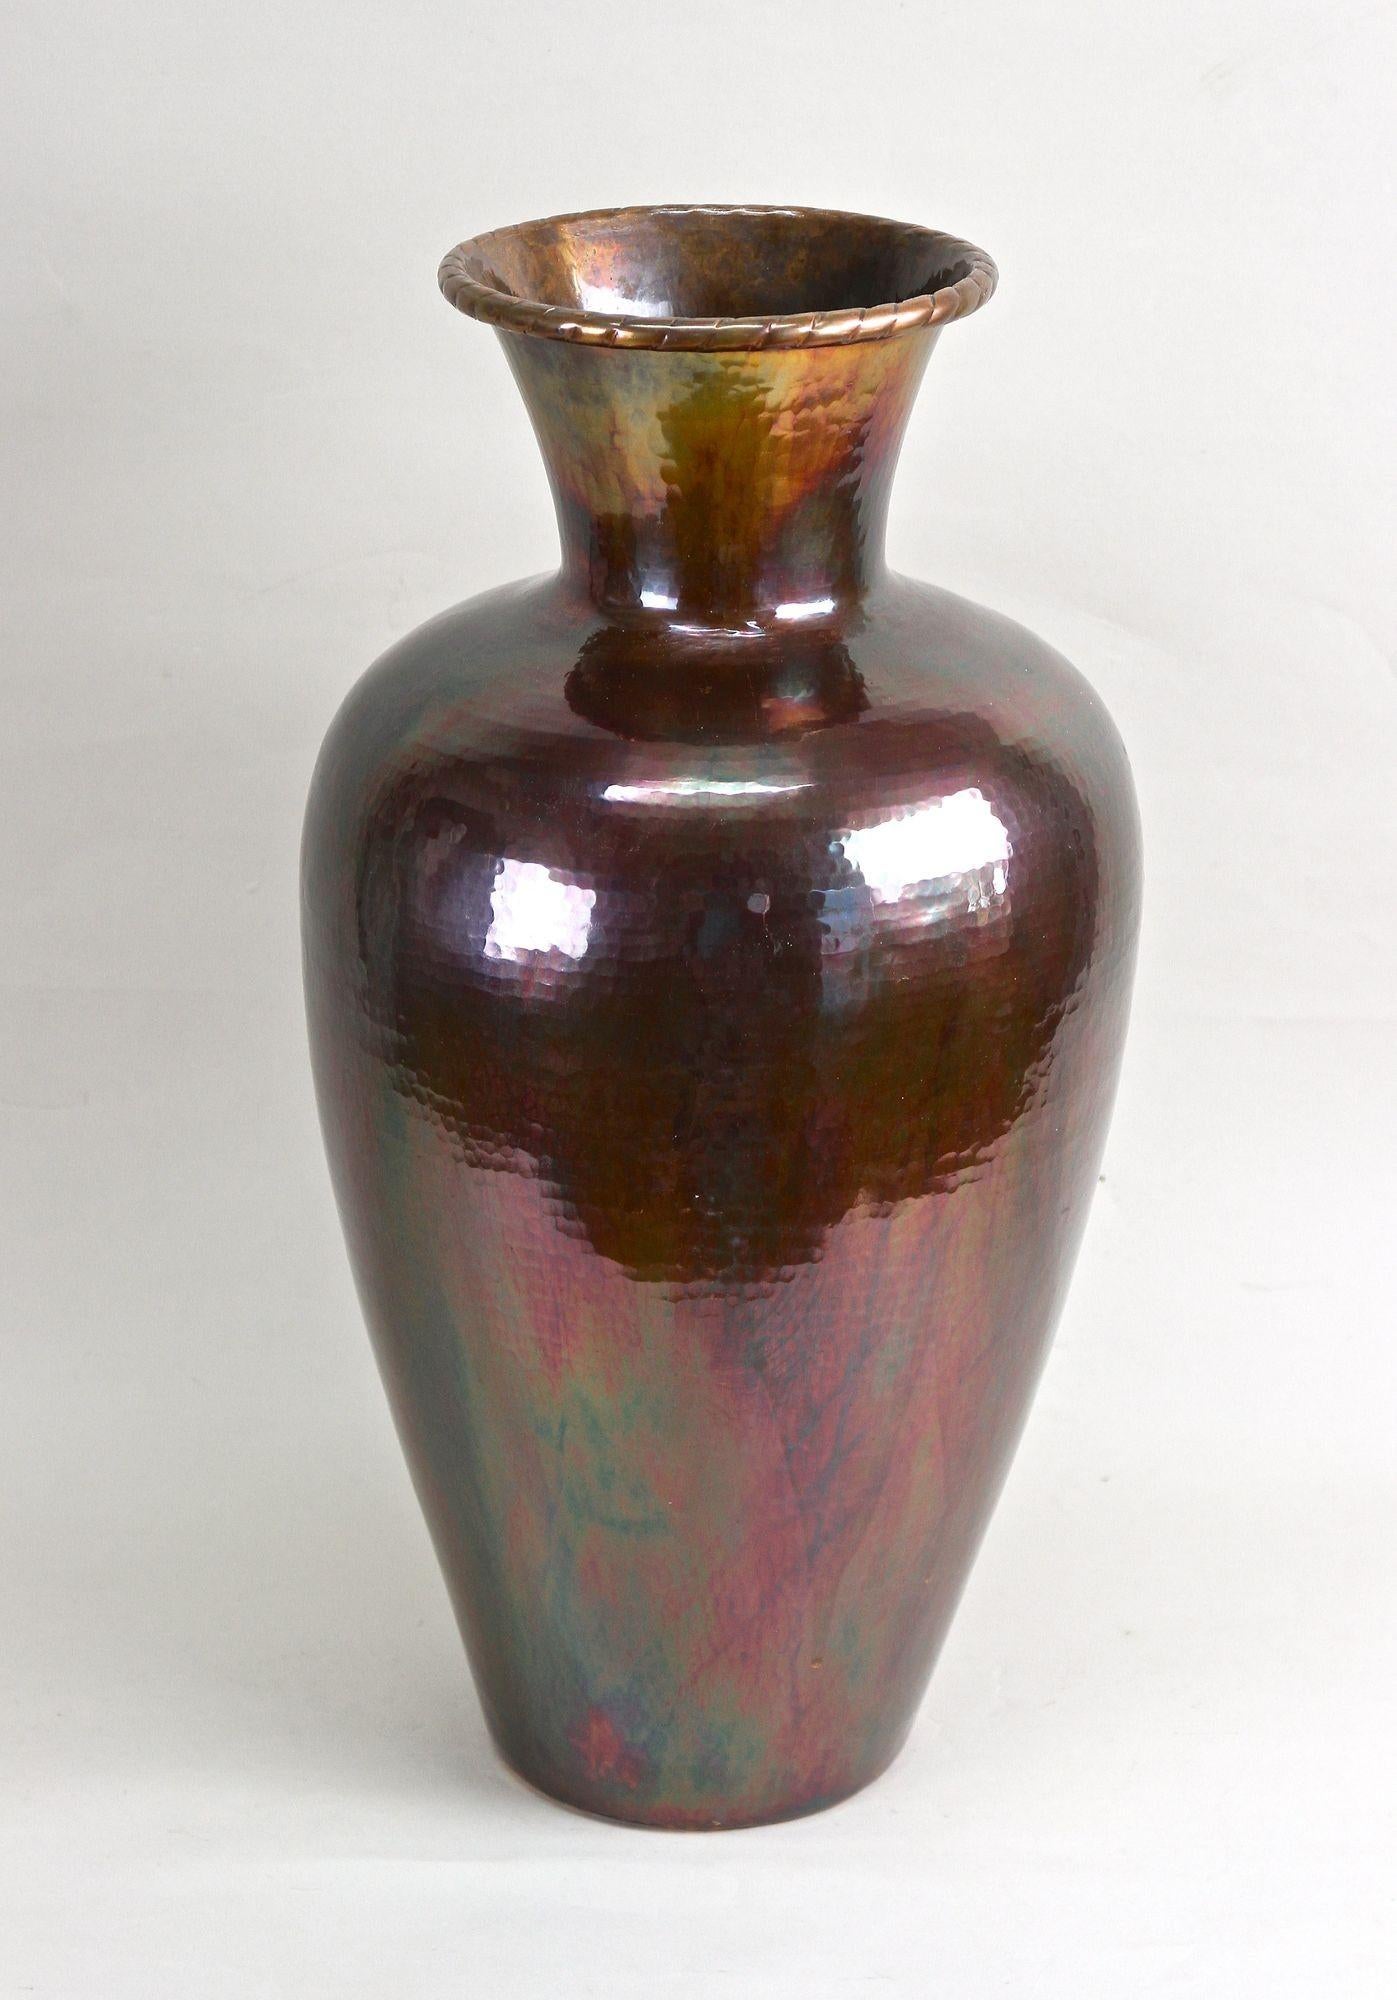 Grand vase de sol en cuivre très décoratif datant des années 1970 en Autriche. Un exemple extraordinaire d'un grand vase de sol en cuivre massif avec un corps de forme bulbeuse. Le véritable point fort de ce vase remarquable est son incroyable